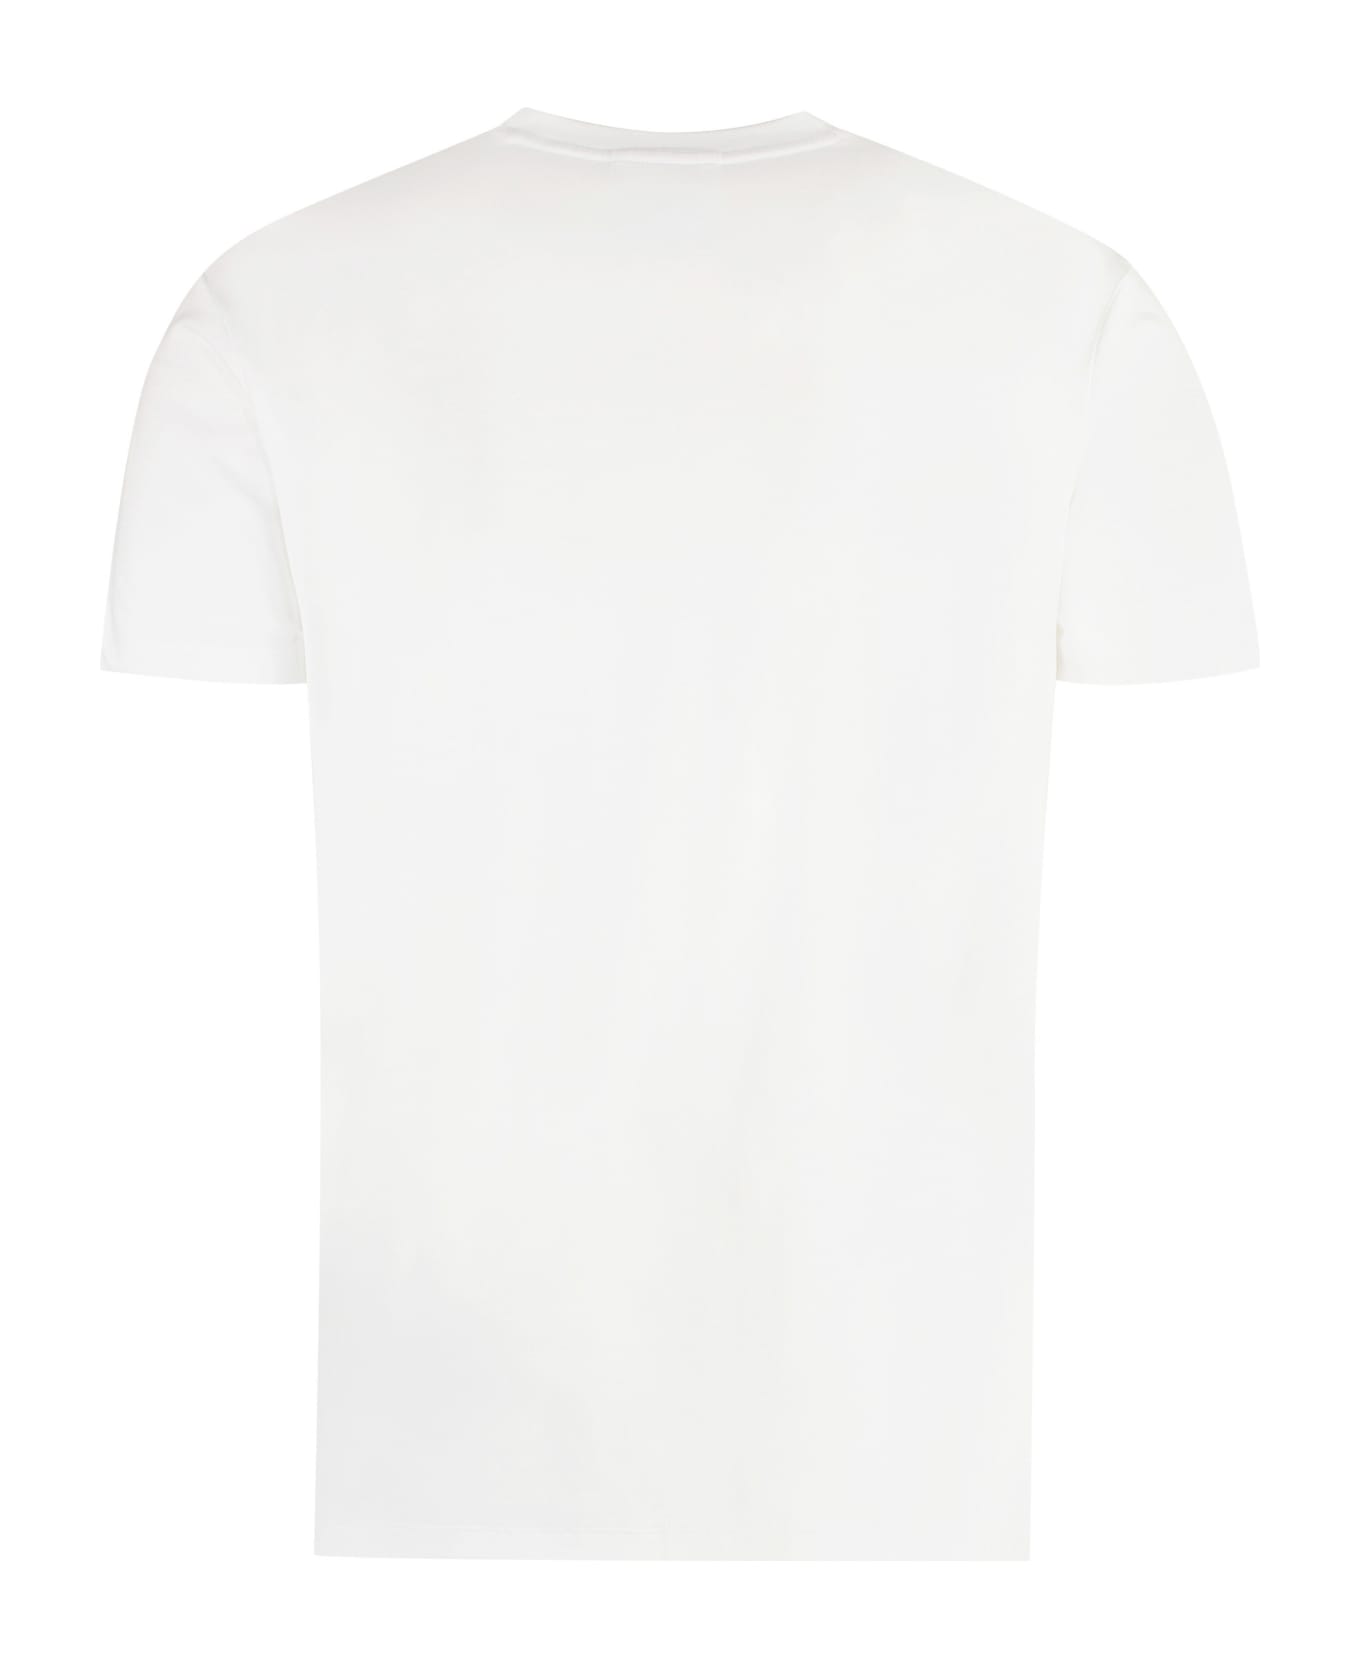 Emporio Armani Viscose Jersey T-shirt - Bianco Ottico シャツ